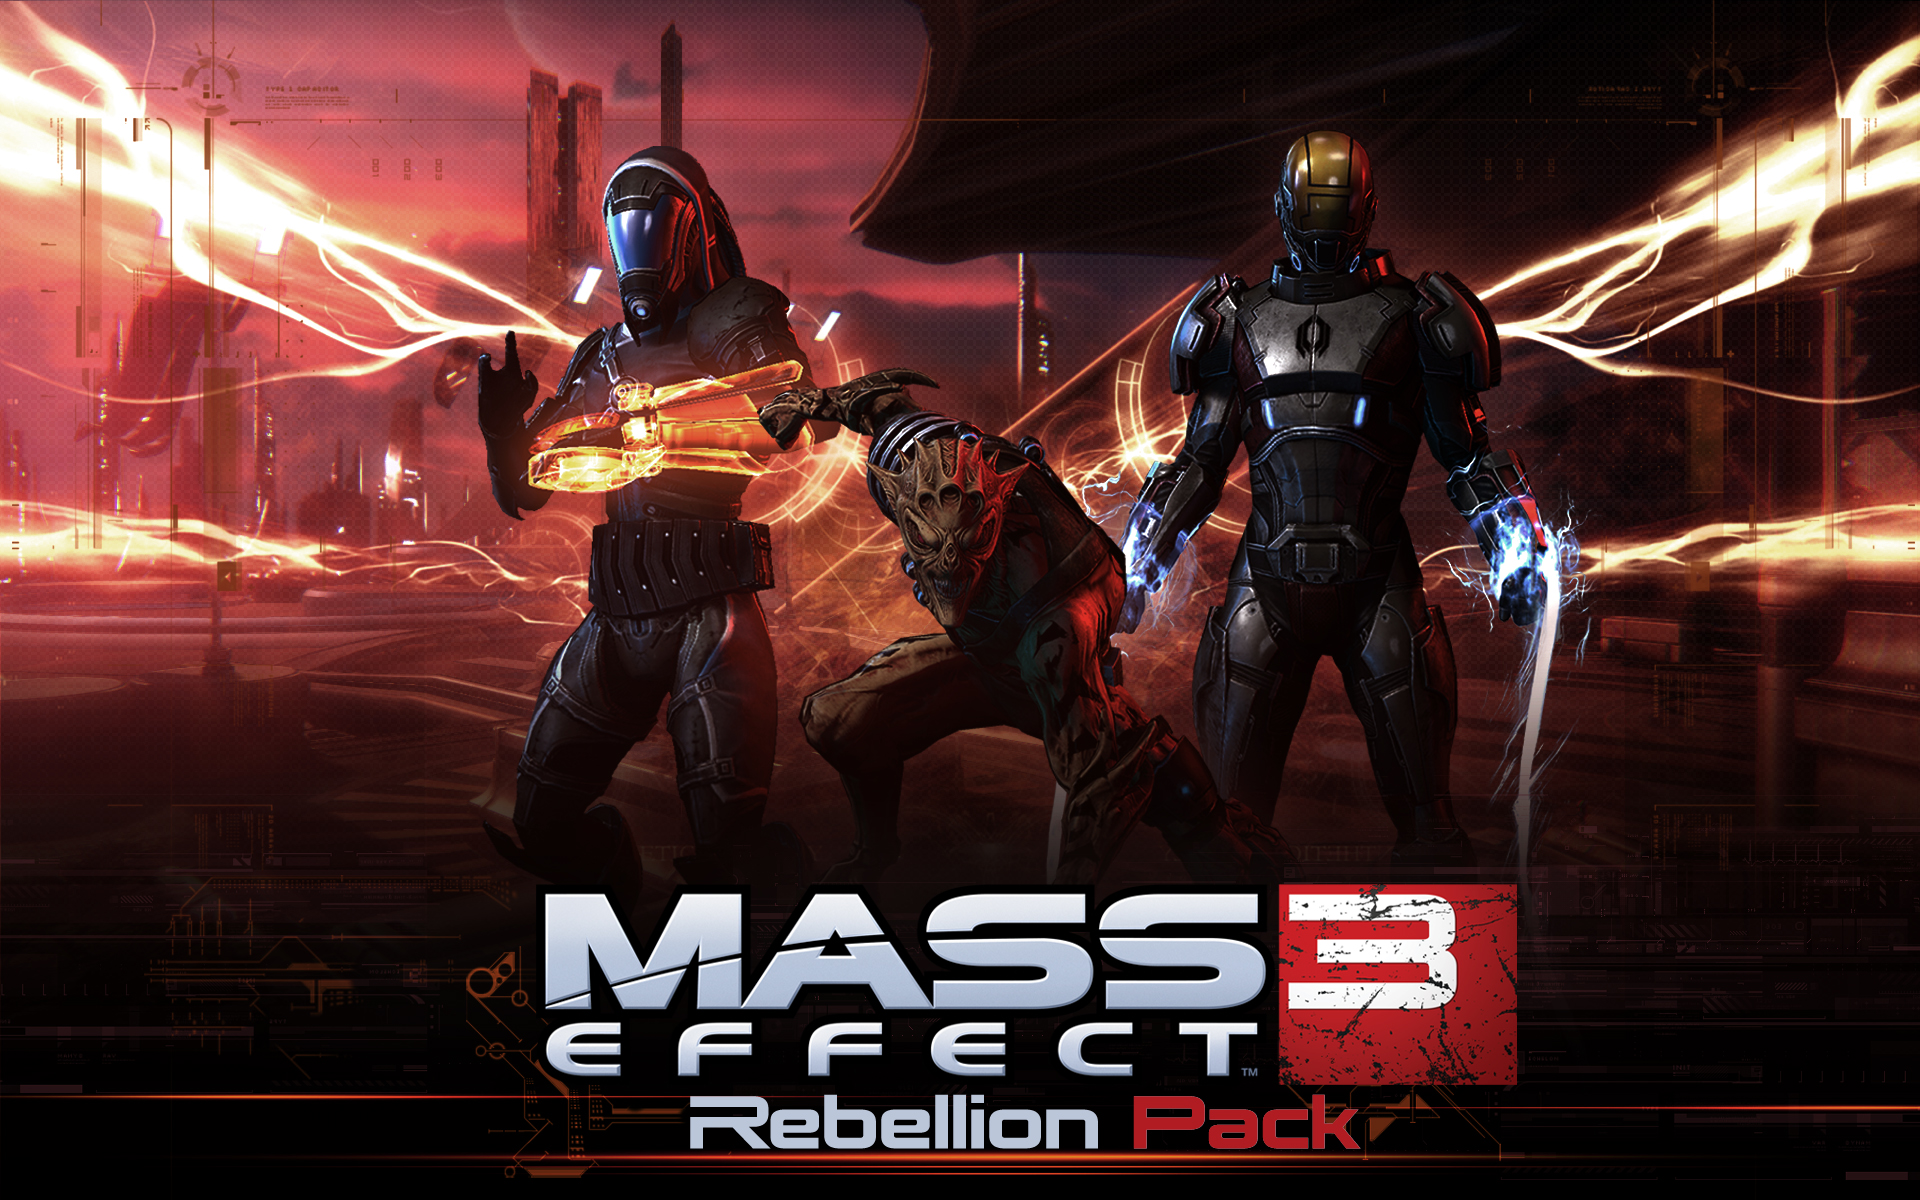 Jövő kedden jön a következő DLC a Mass Effect 3-hoz